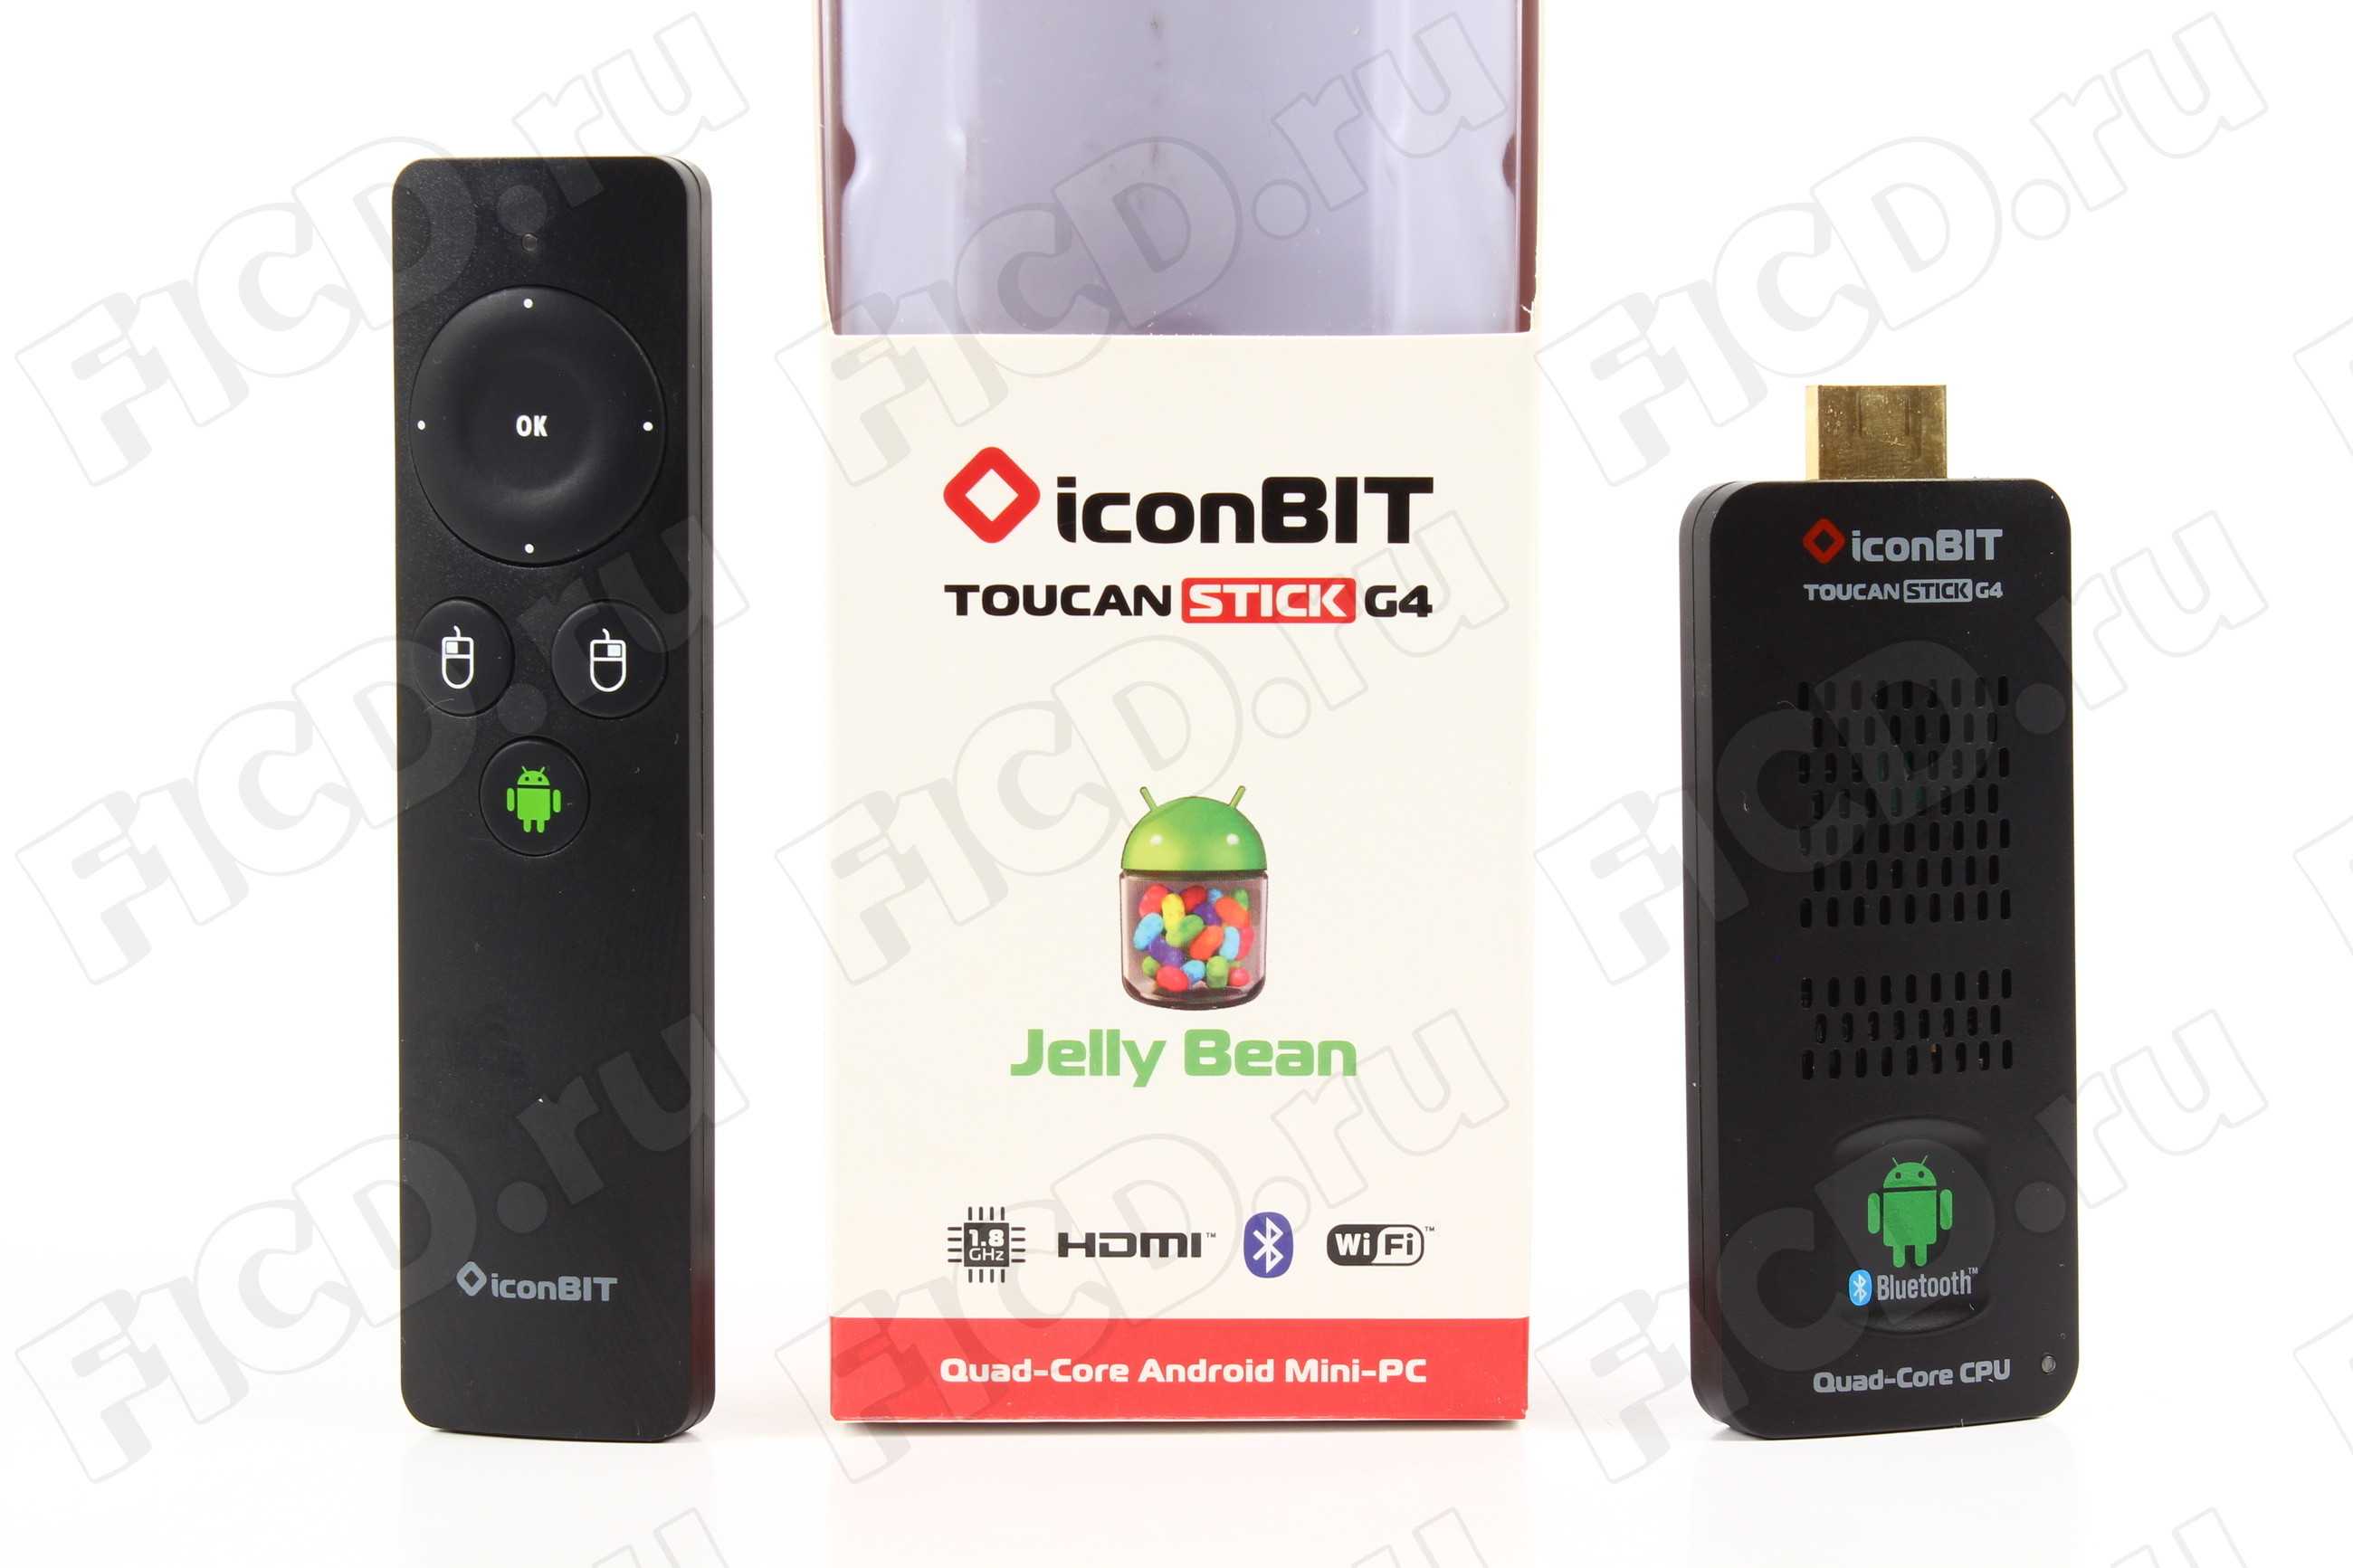 Iconbit toucan smart 3d купить по акционной цене , отзывы и обзоры.